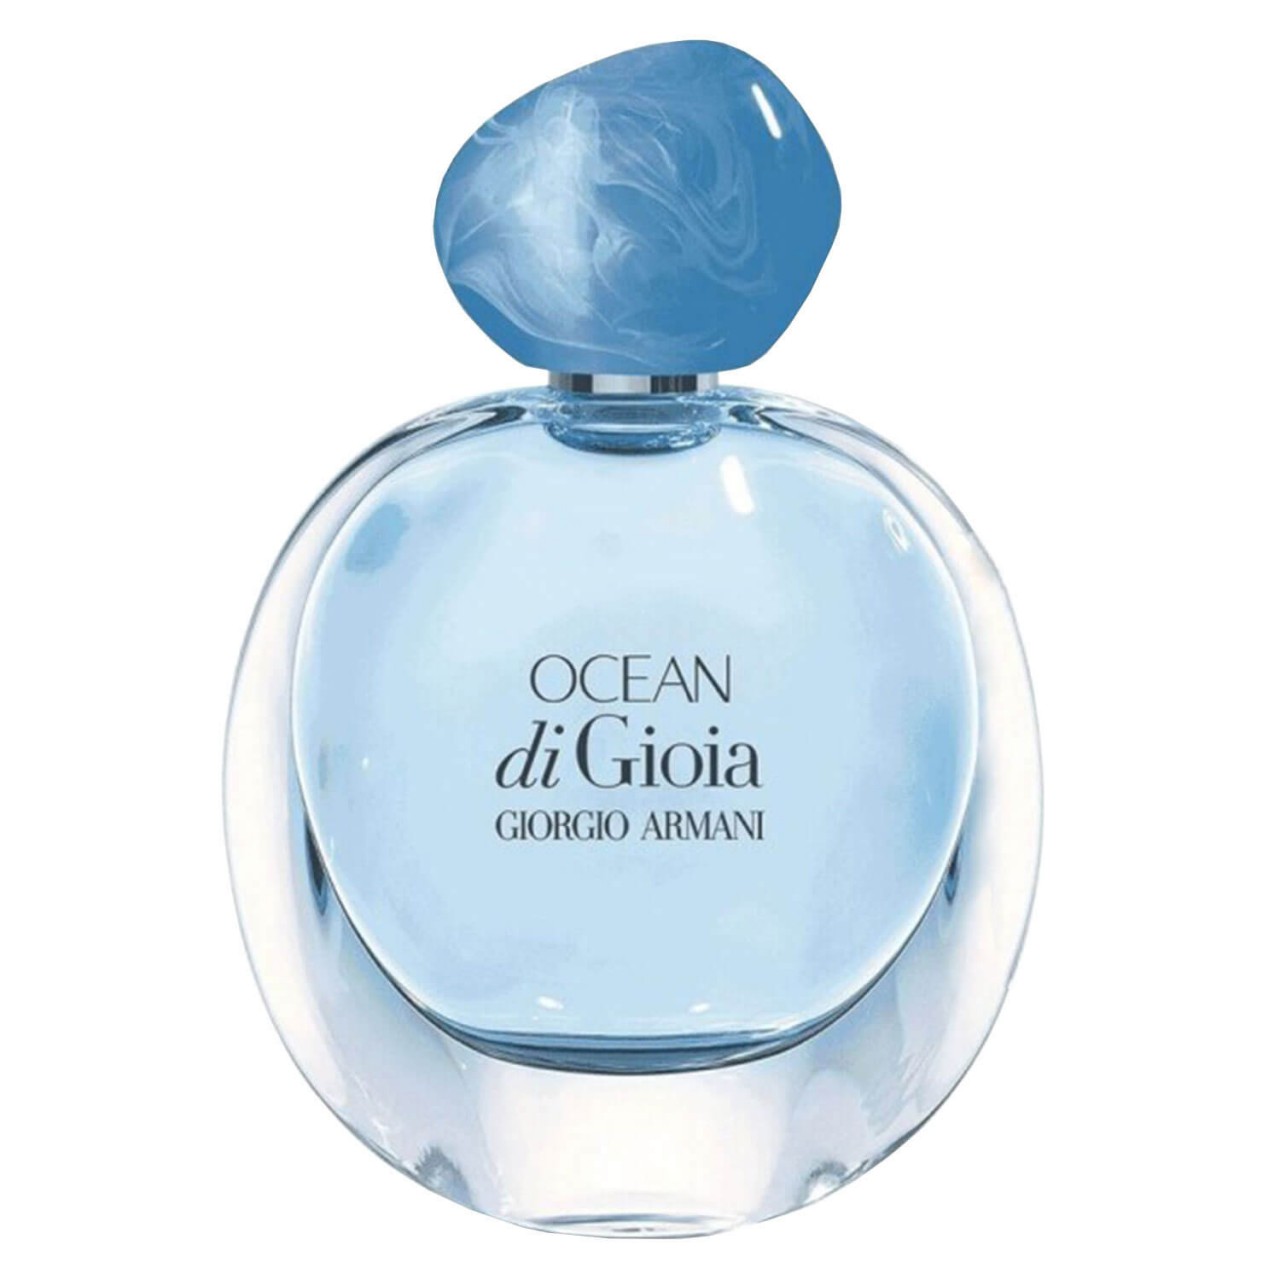 Gìoia - Ocean Di Gìoia Eau de Parfum von Giorgio Armani